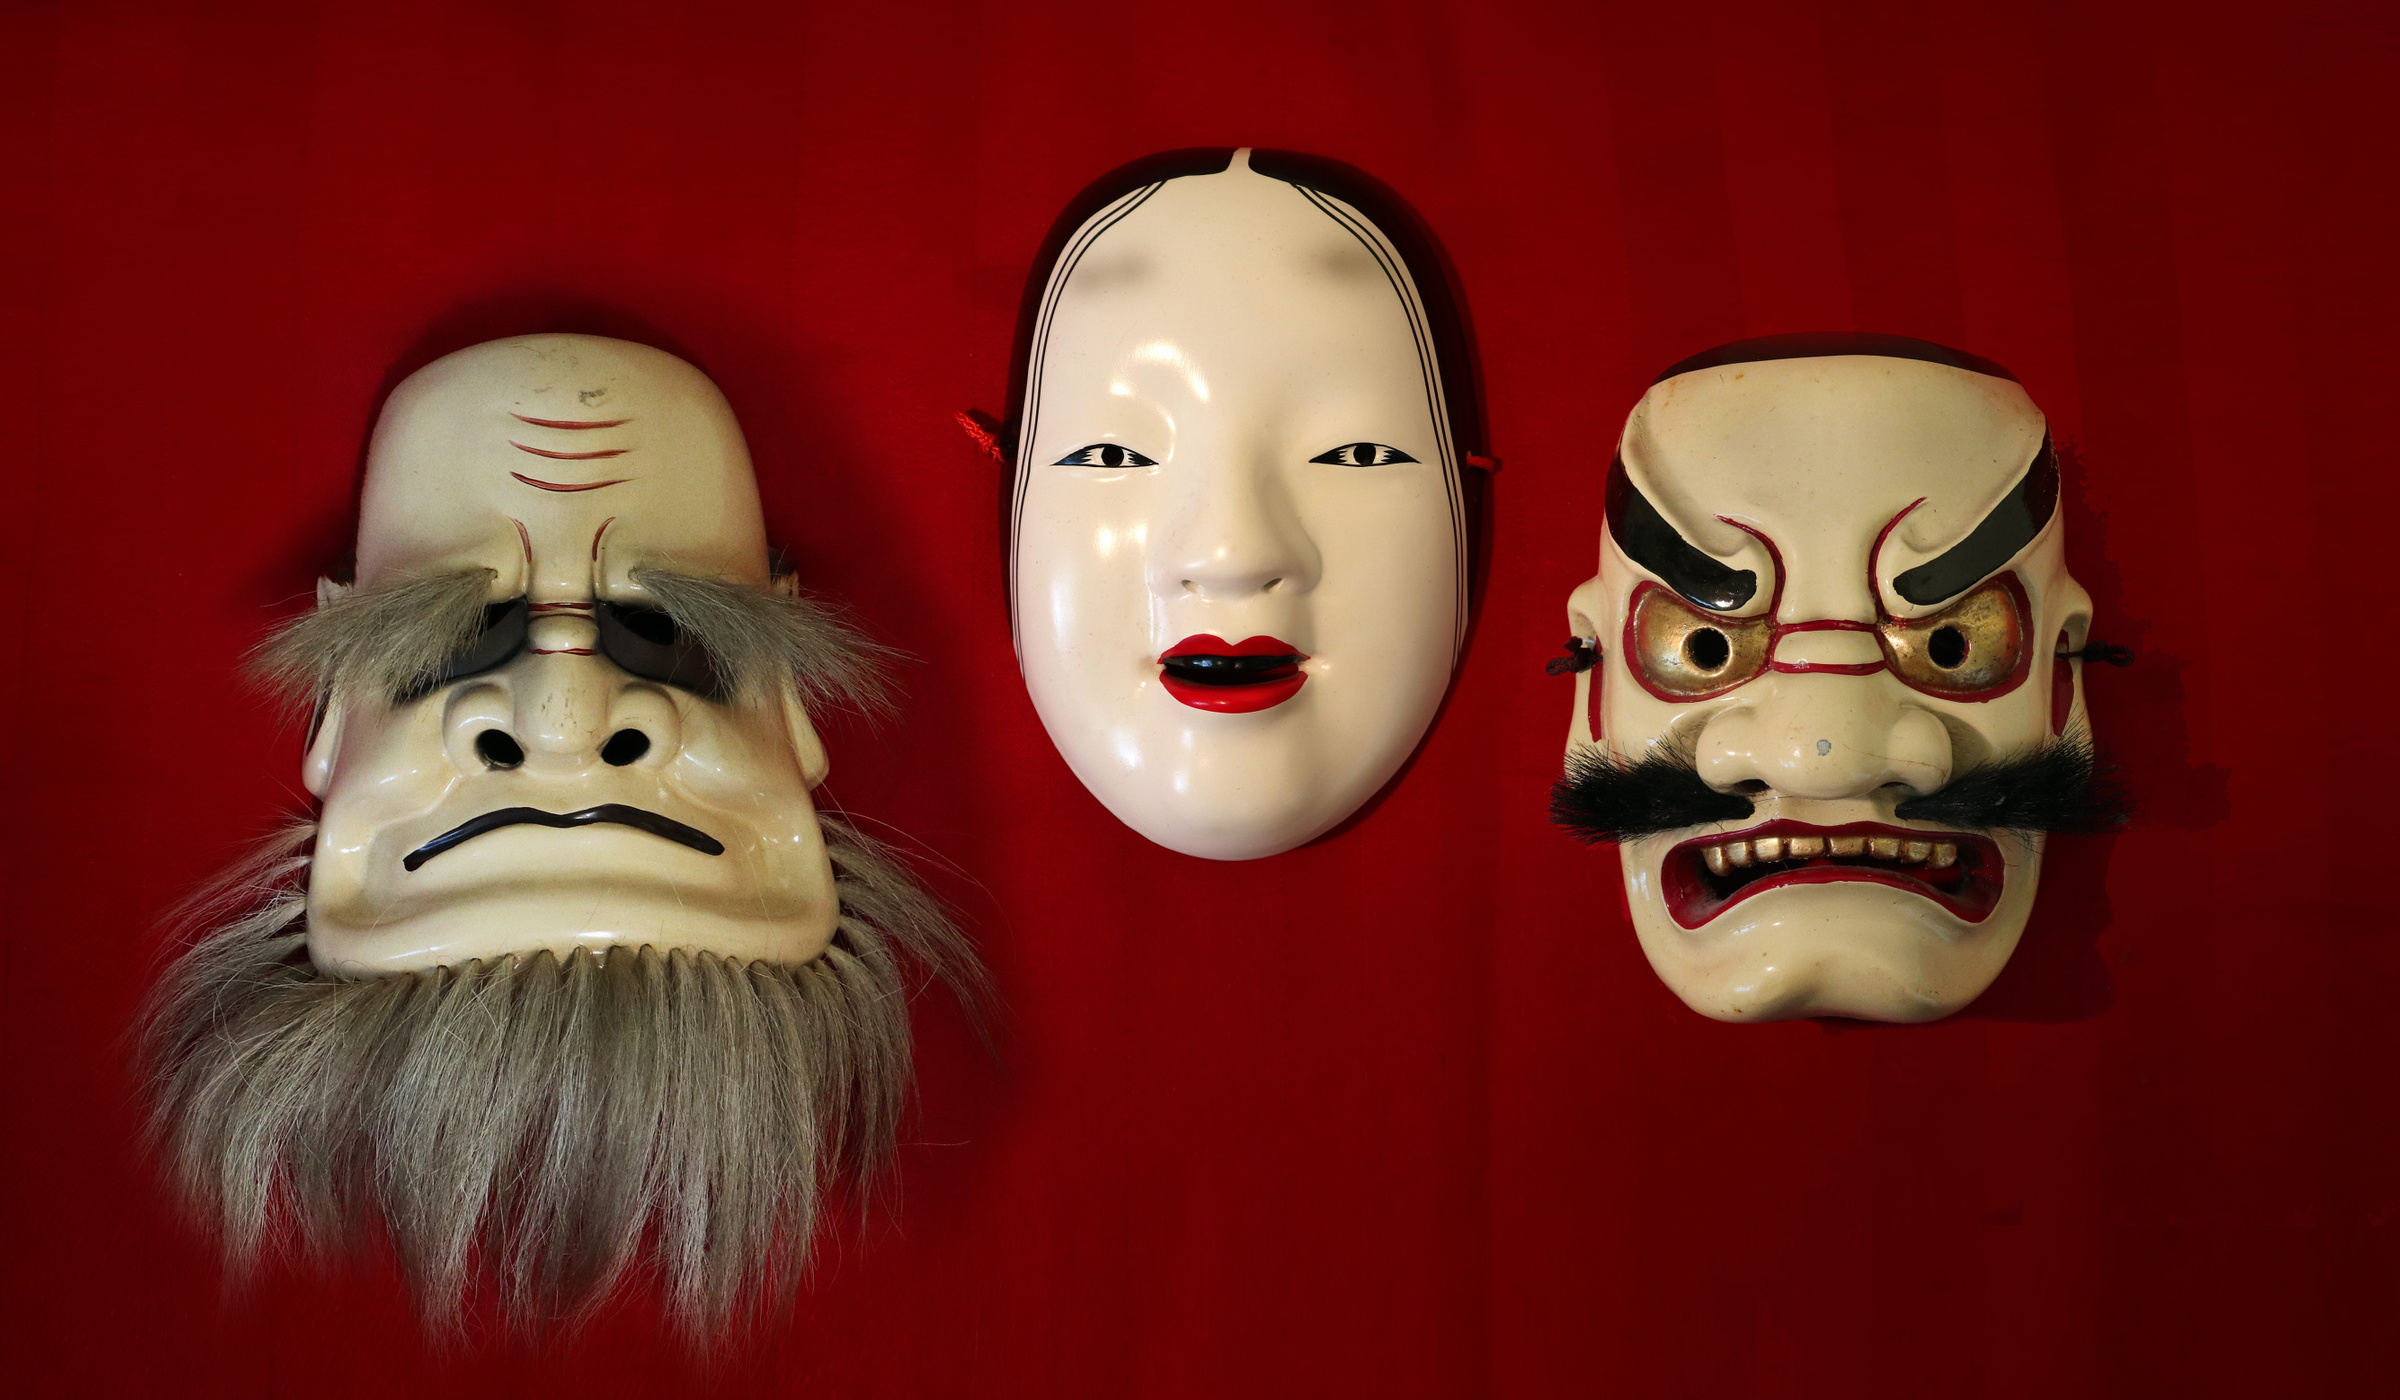 Традиционно считается, что в масках и куклах живут злые духи, в спальне лучше такое не держать. Фото © Unsplash